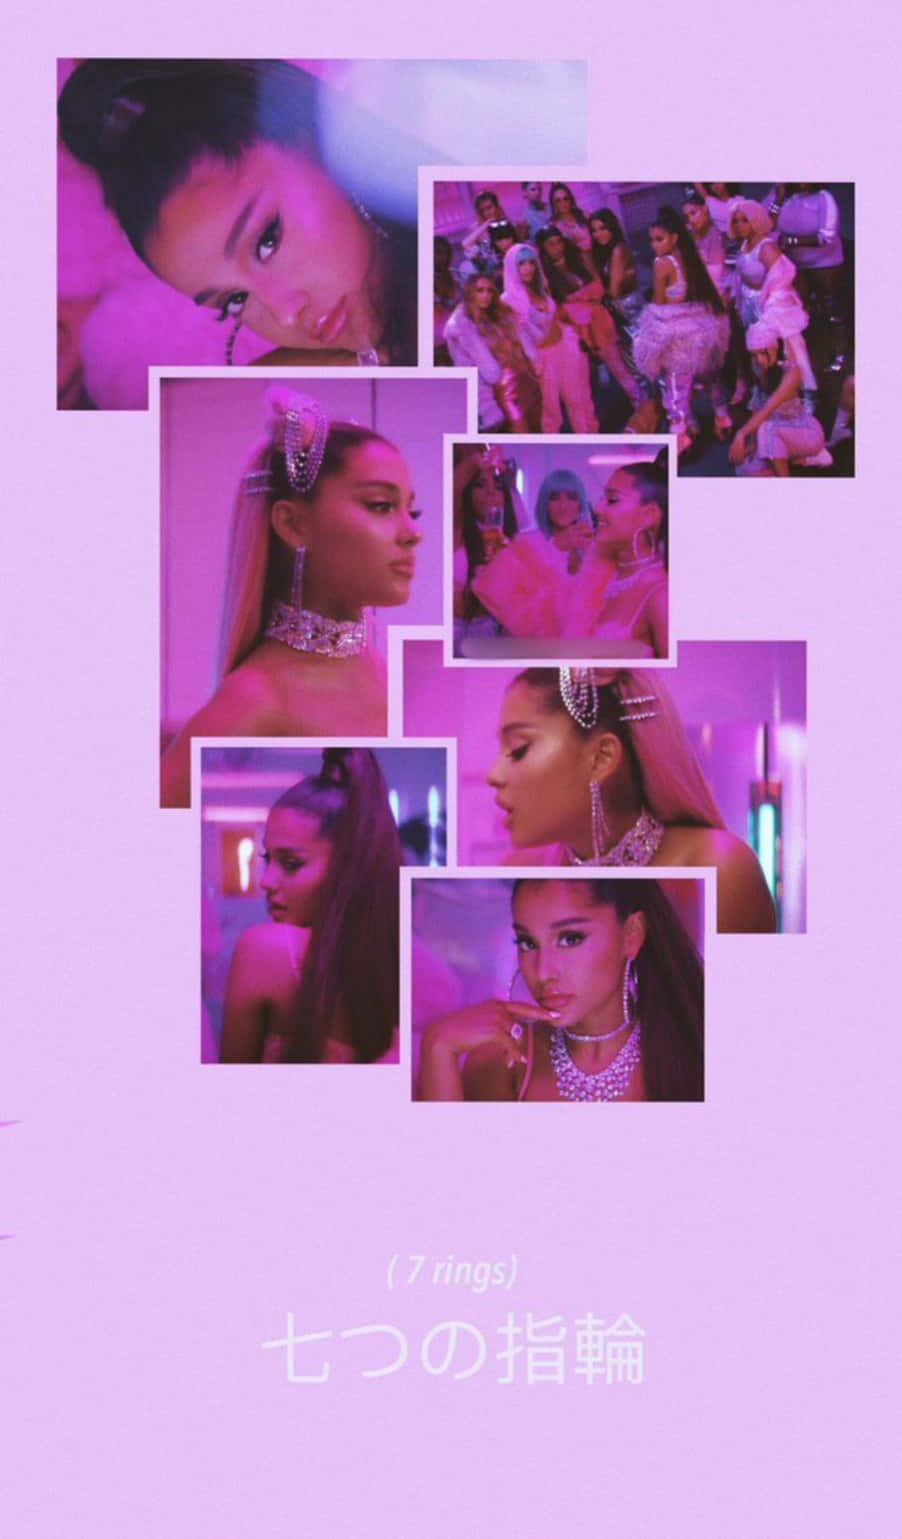 Ariana Grande 7 Rings Collage Tapet: En samling af en stilfuld og moderne collage af Ariana Grande og hendes berømte '7 Rings' single. Wallpaper